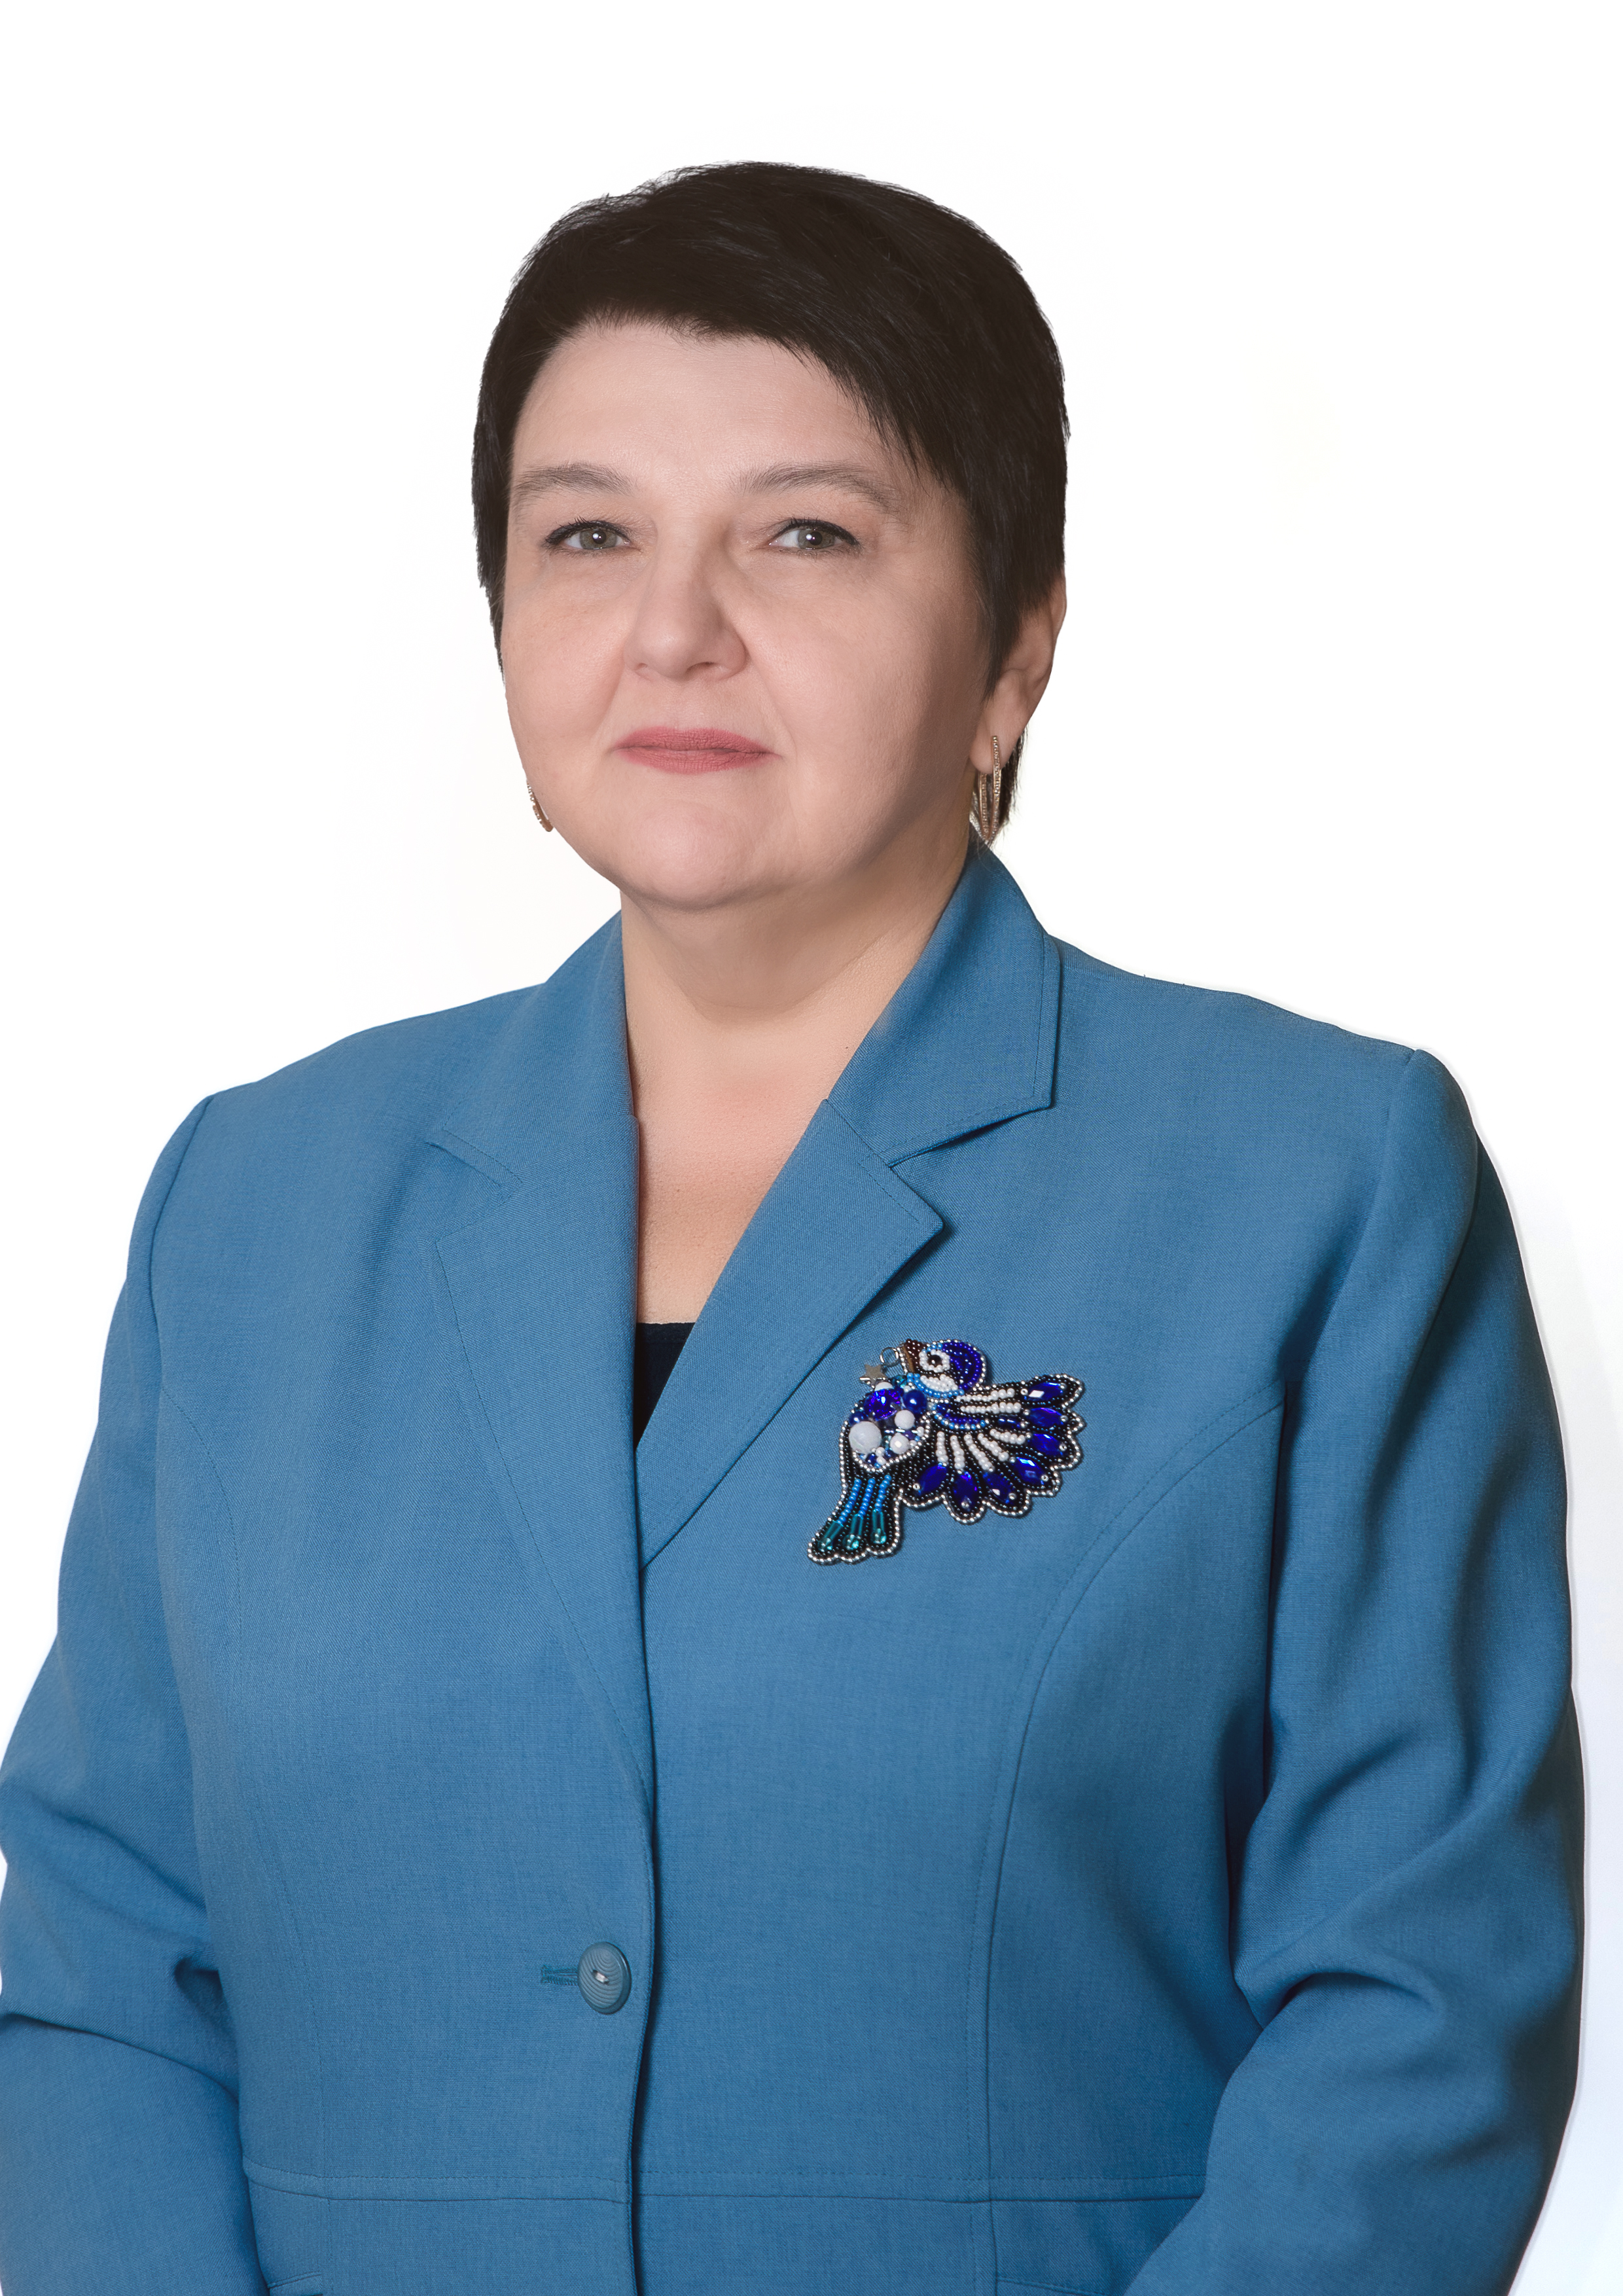 Говорищева Ирина Вячеславовна.